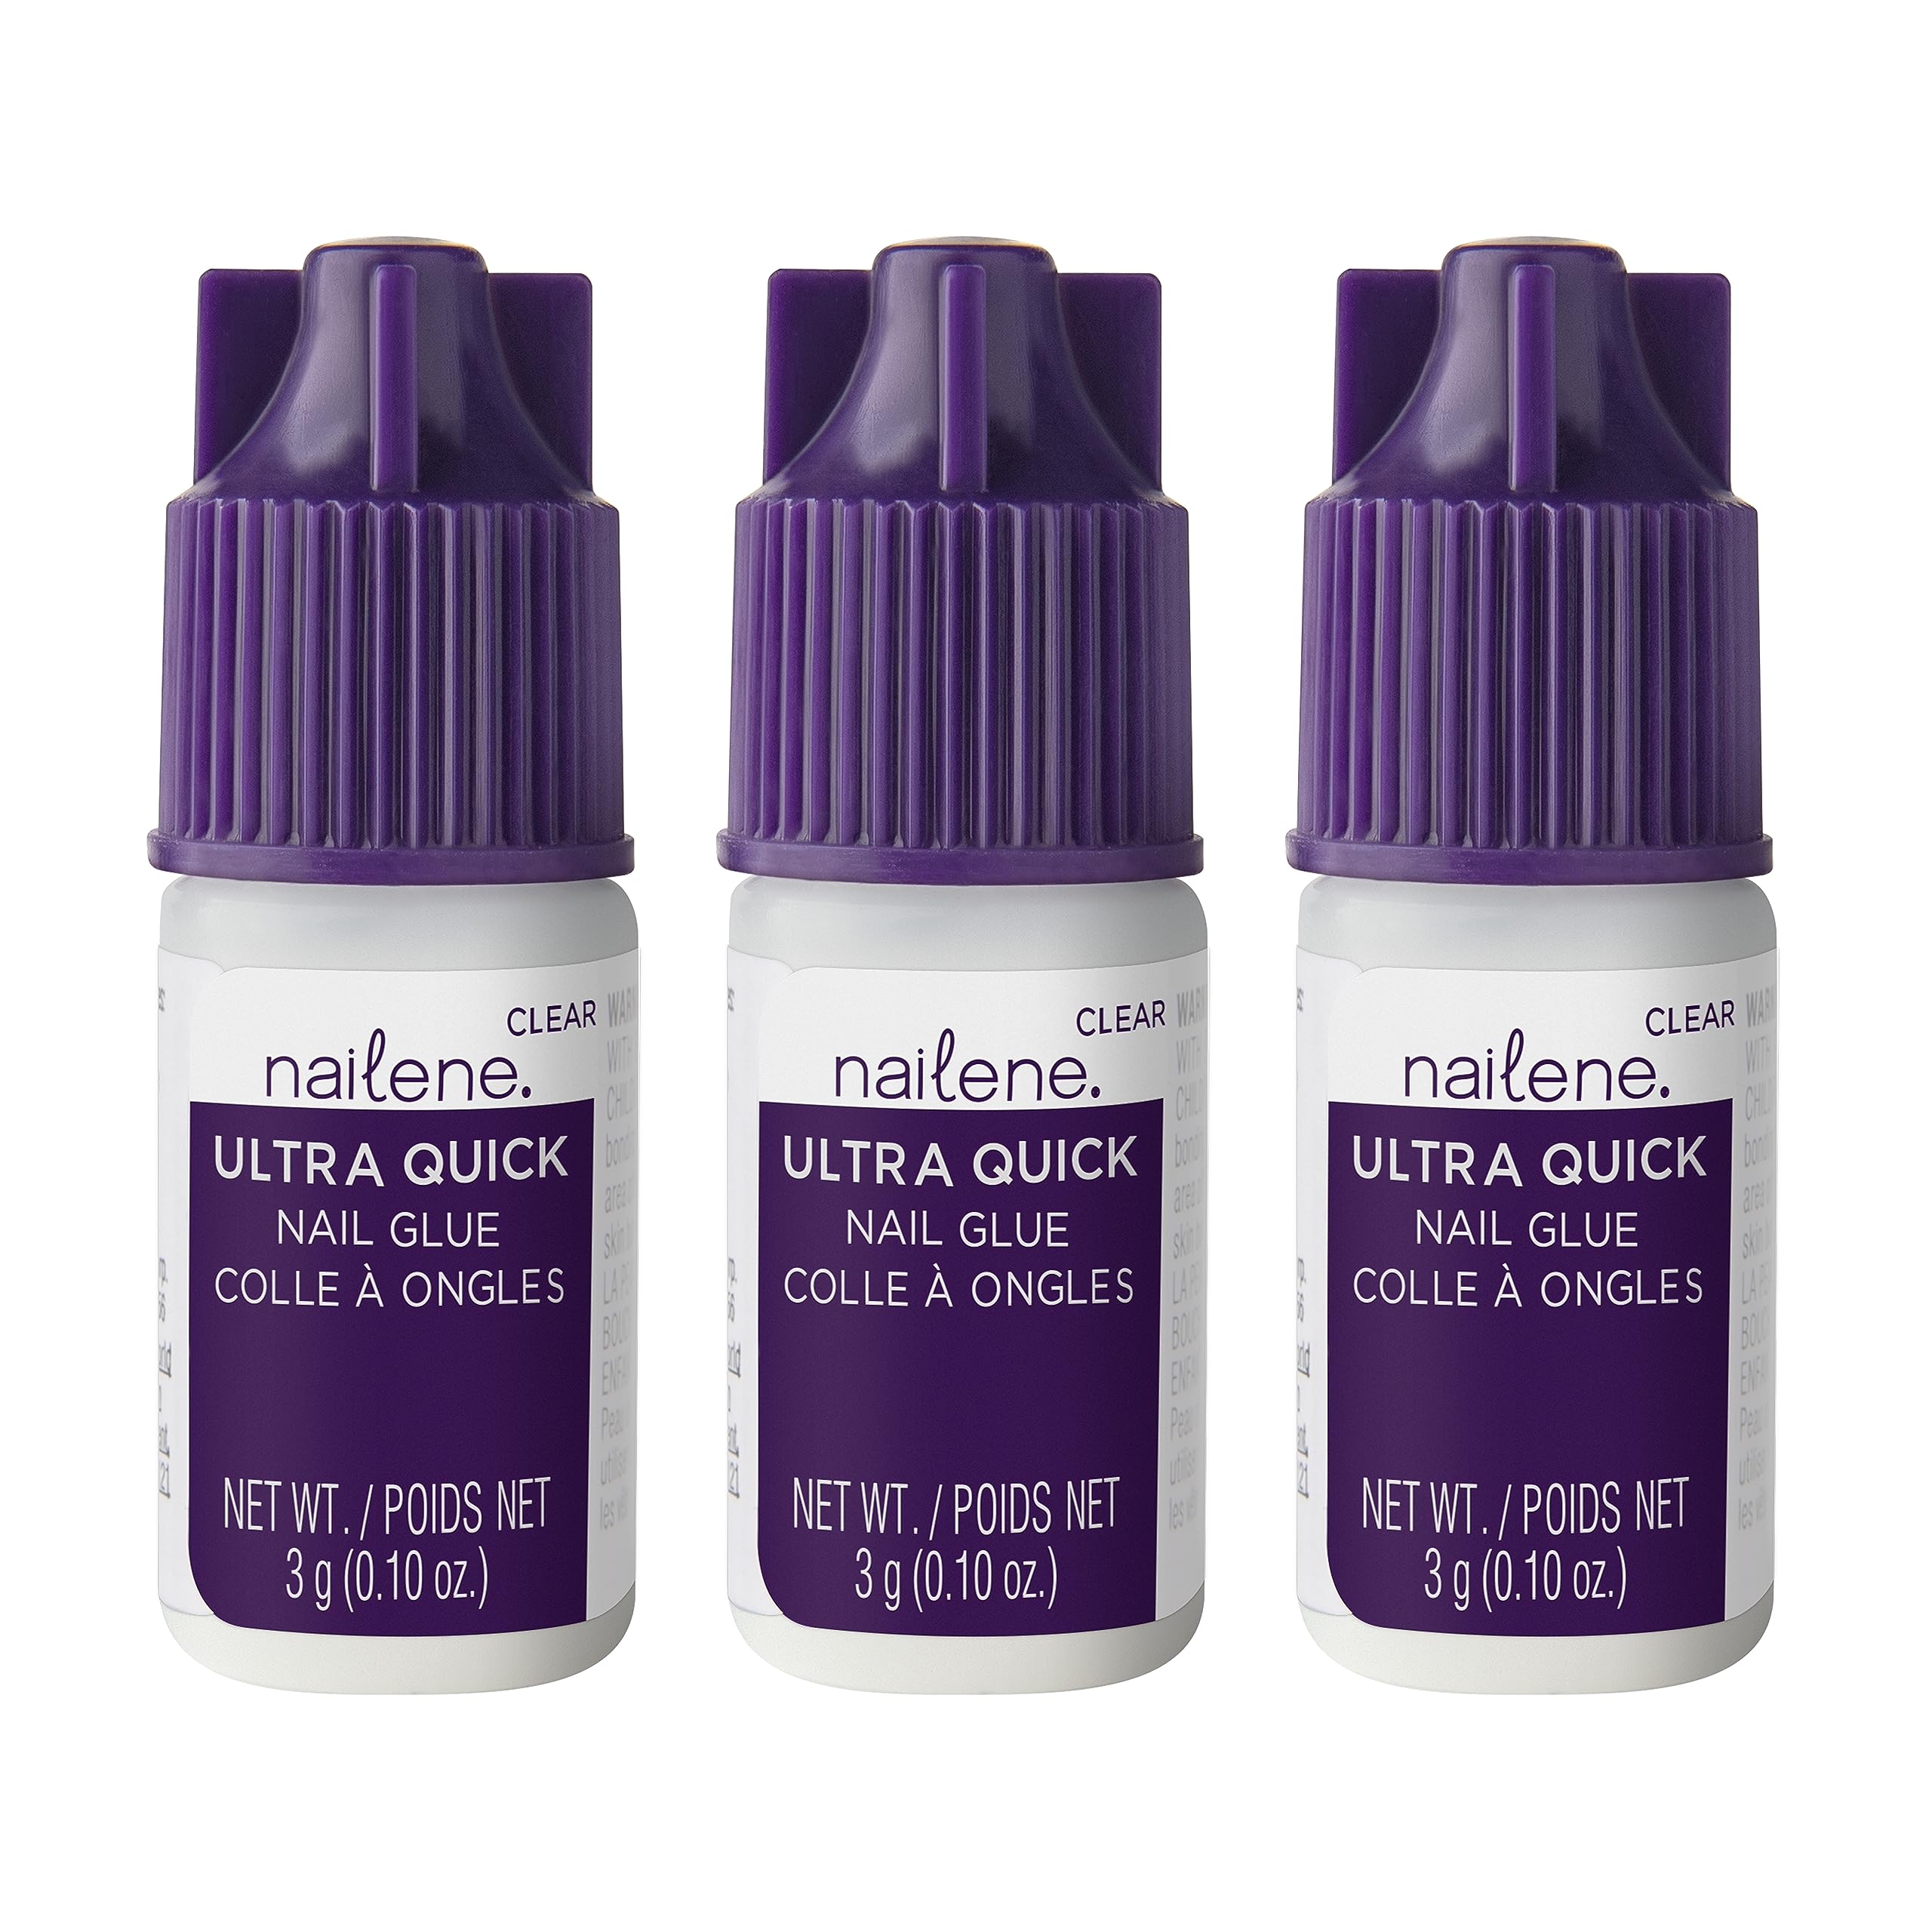 Nailene Ultra Quick Nail Glue, 0.10 oz – Durable, Easy to Apply False Nail Glue – Repairs Natural Nails – Quick-Drying Nail Adhesive Lasts Up to 7 Days, 3 Pack